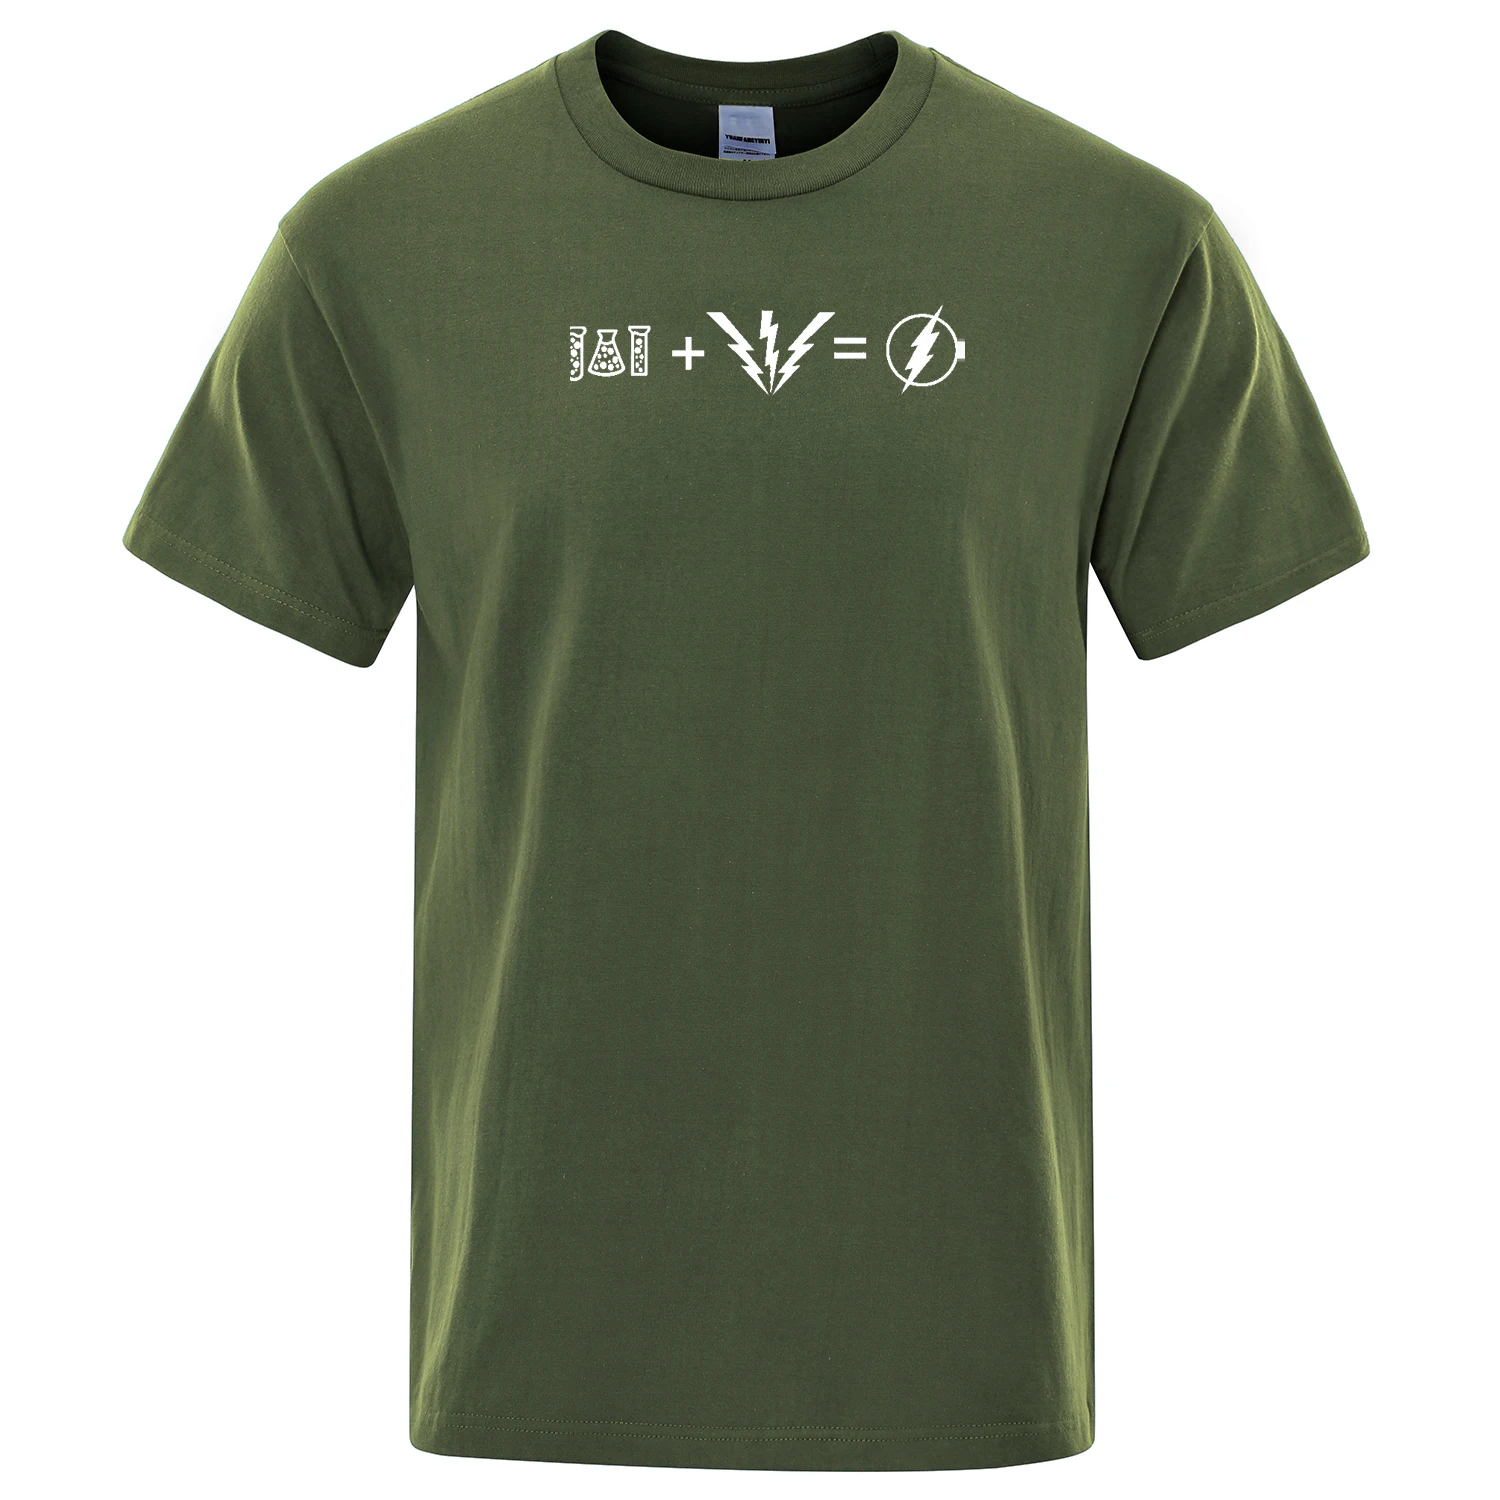 Модная мужская футболка Sheldon cooper в том же стиле, мужские футболки, футболки с забавным принтом, хлопковая футболка,, летние топы The flash - Цвет: army green 5